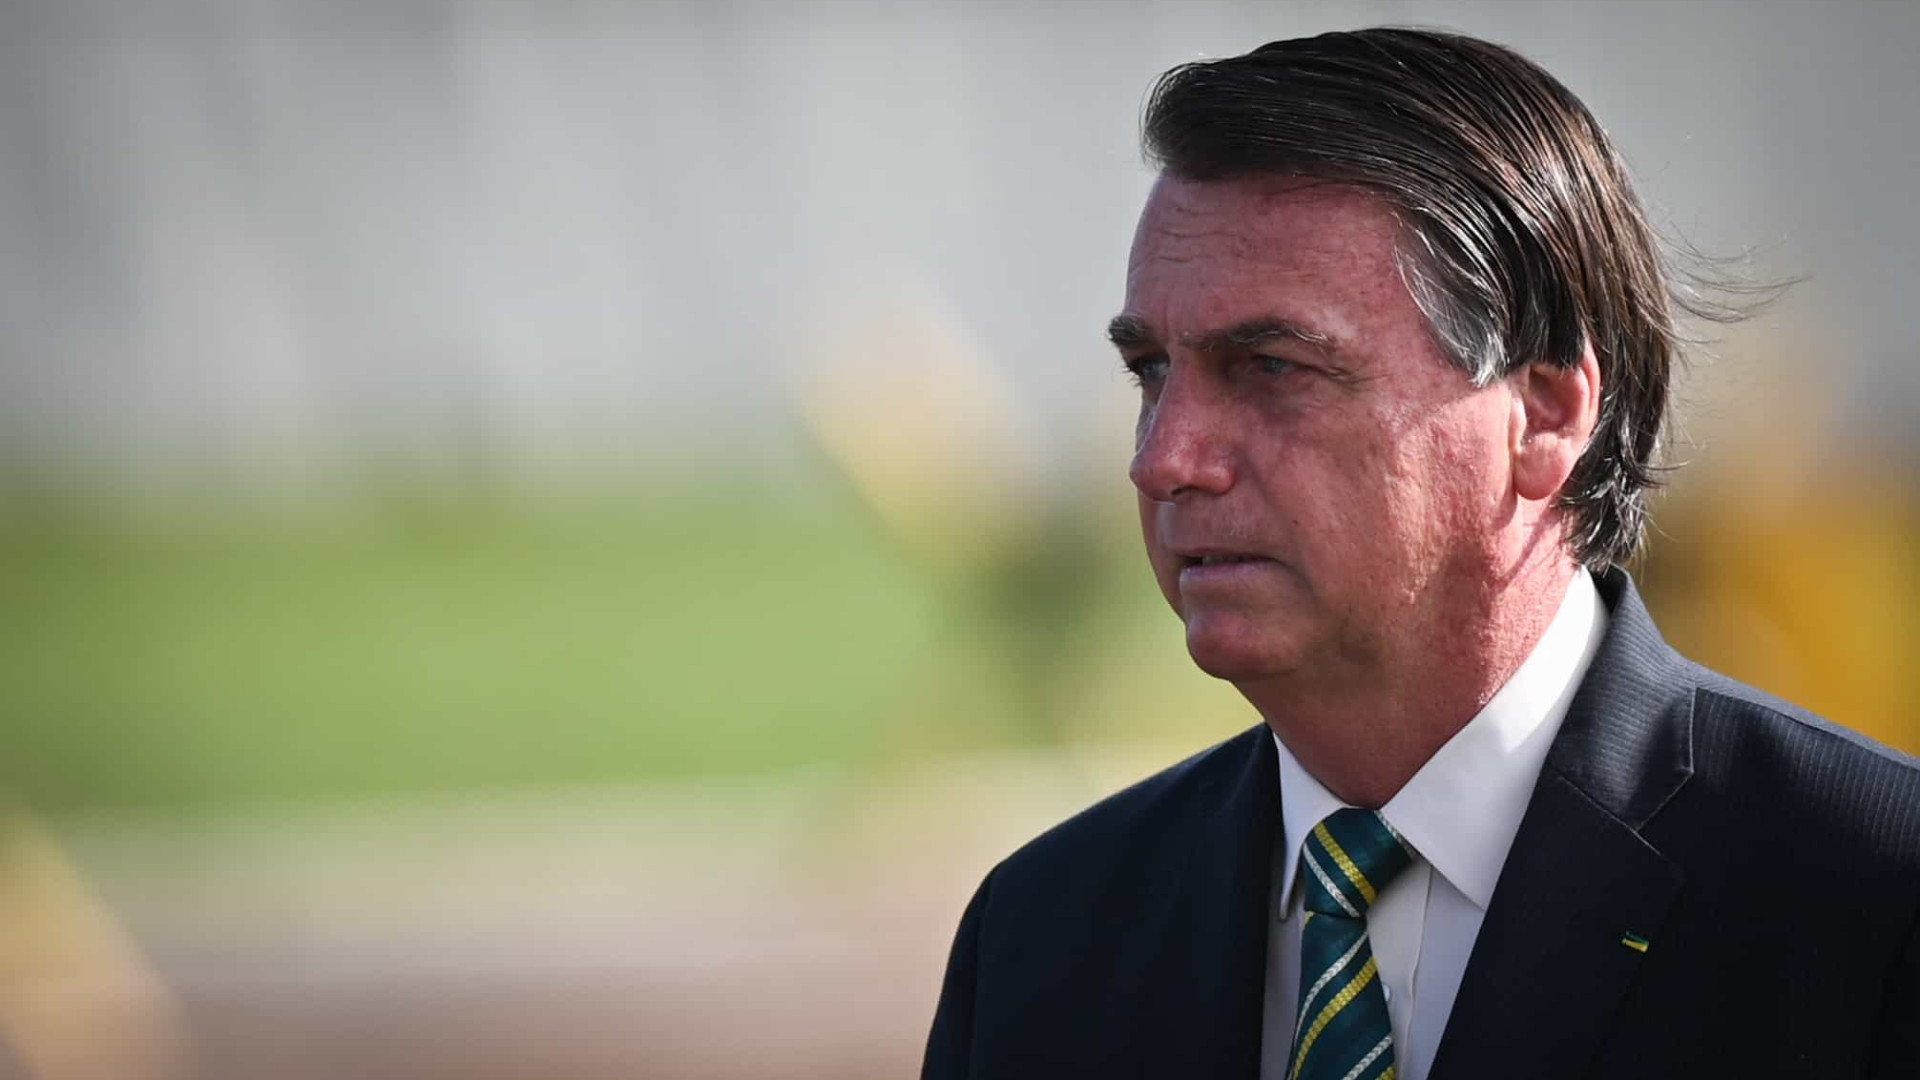 Sobe a 40% a avaliação do governo Bolsonaro como ruim ou péssimo, diz pesquisa